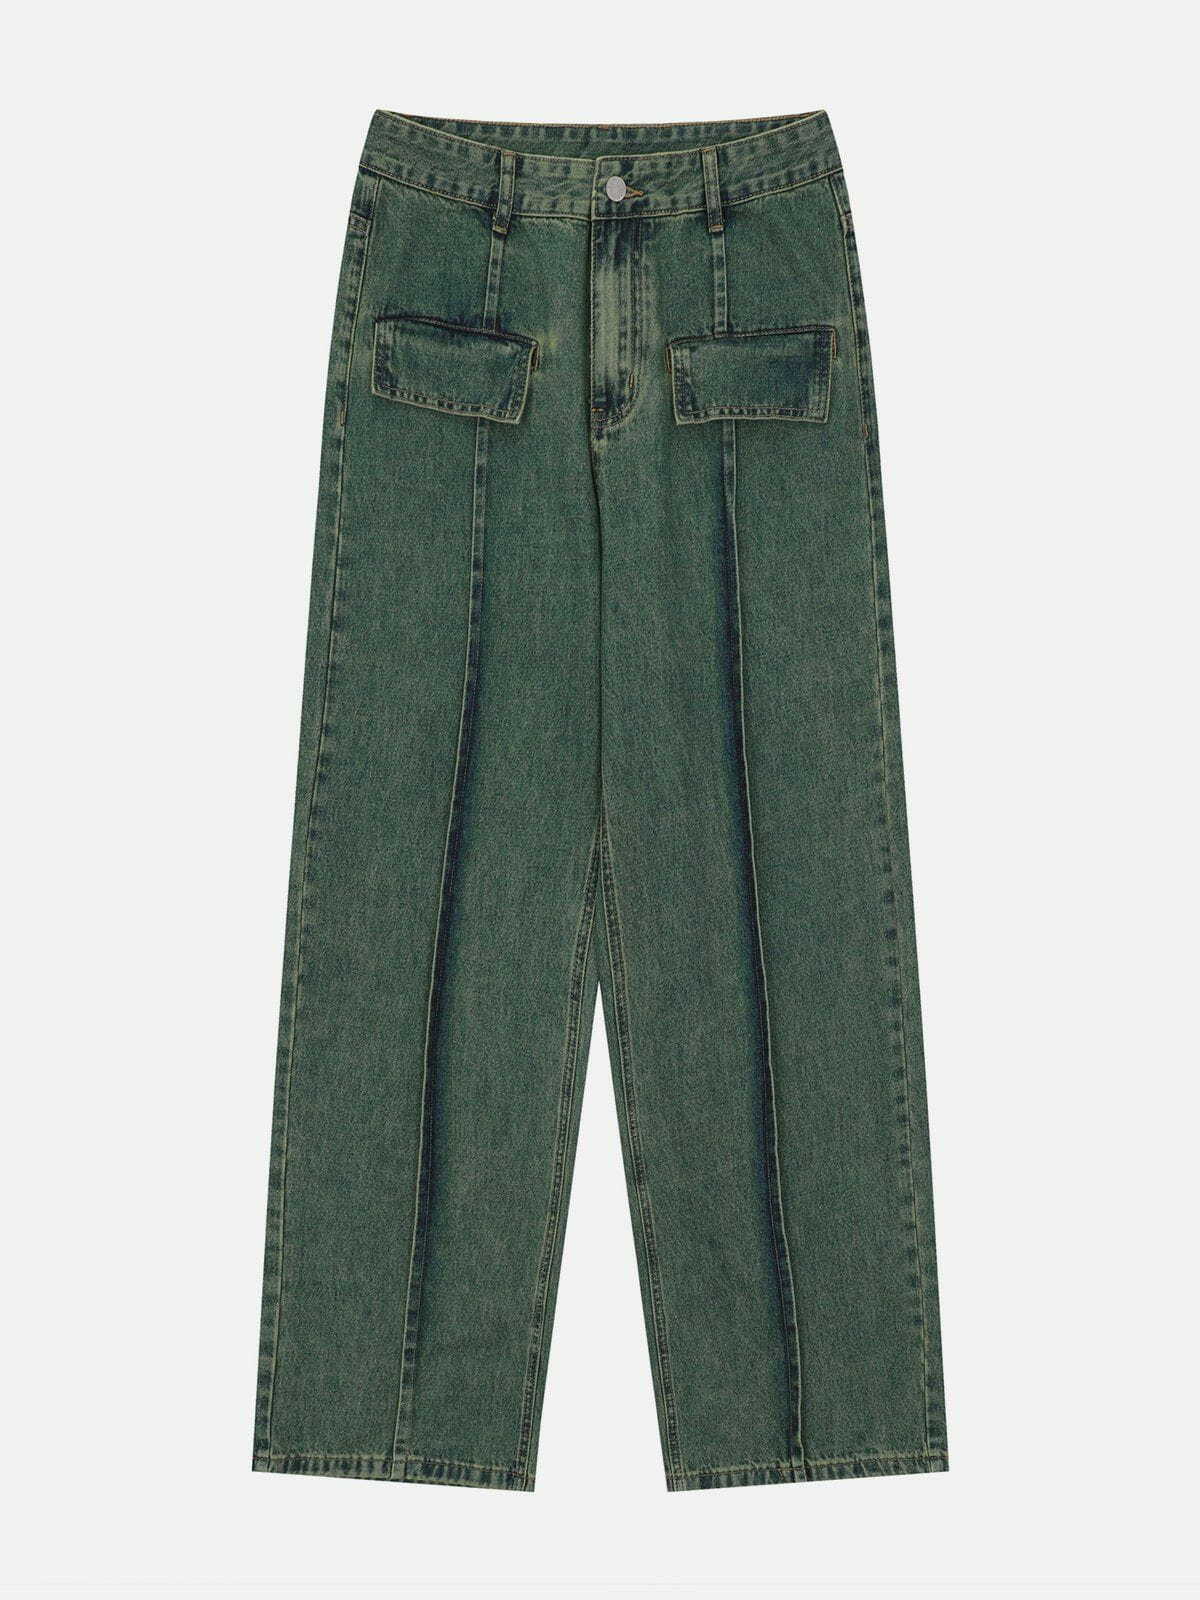 vintage washed lines design jeans urban vintage washed denim retro & edgy fashion 6225